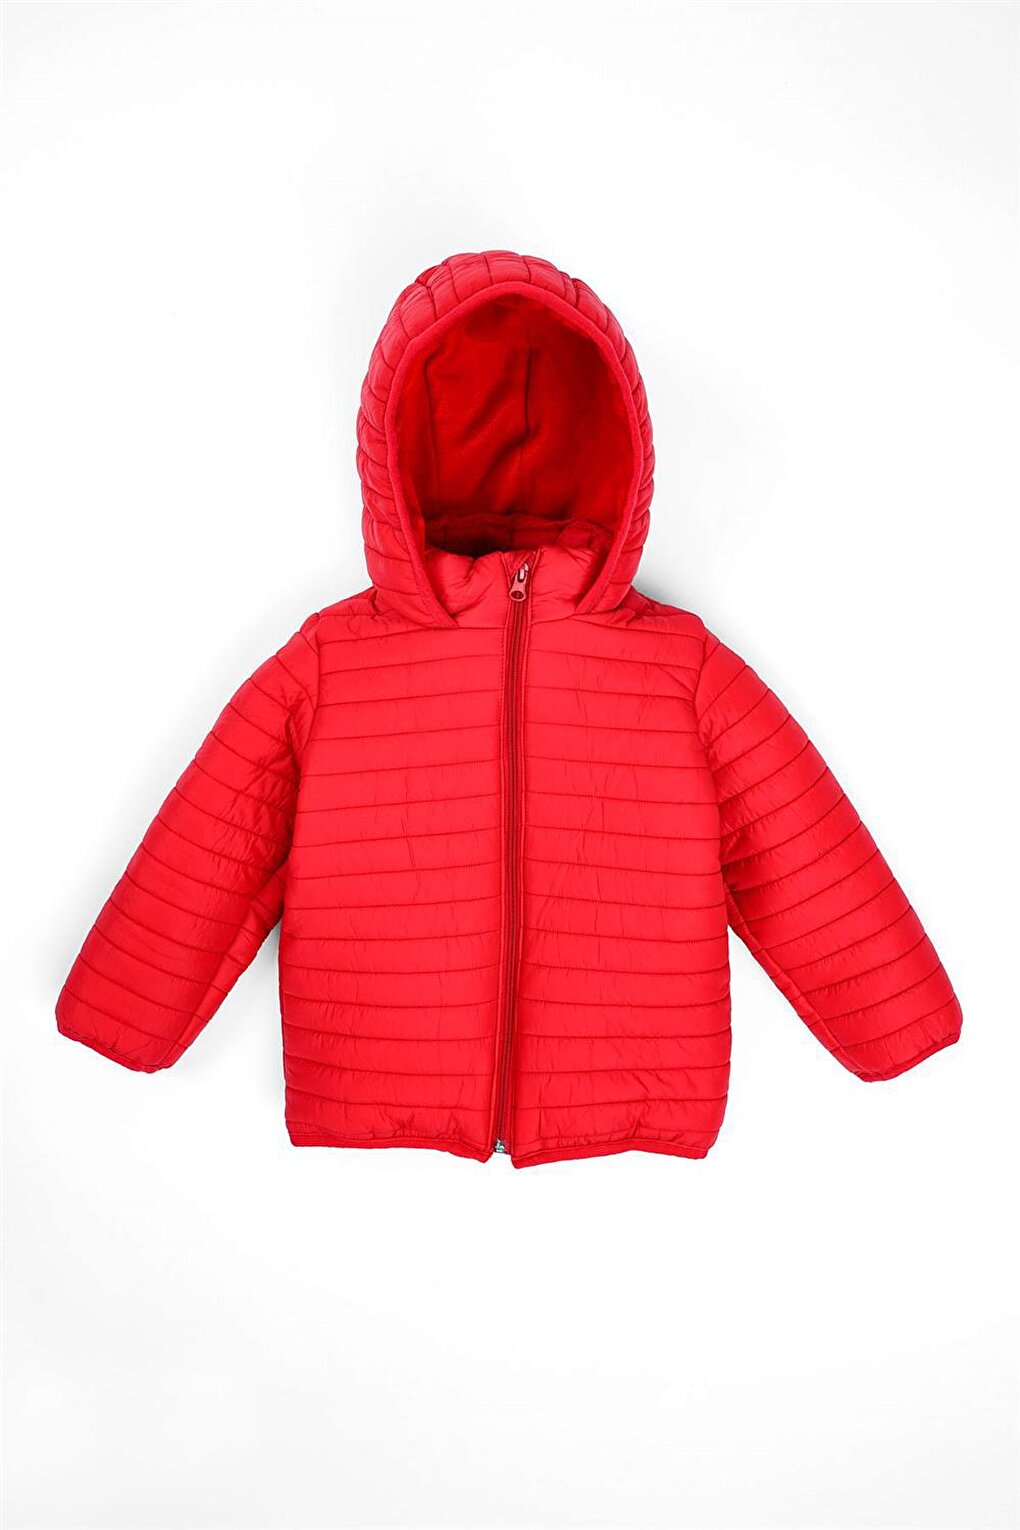 Красное пальто с капюшоном для мальчика с флисовой подкладкой Zepkids